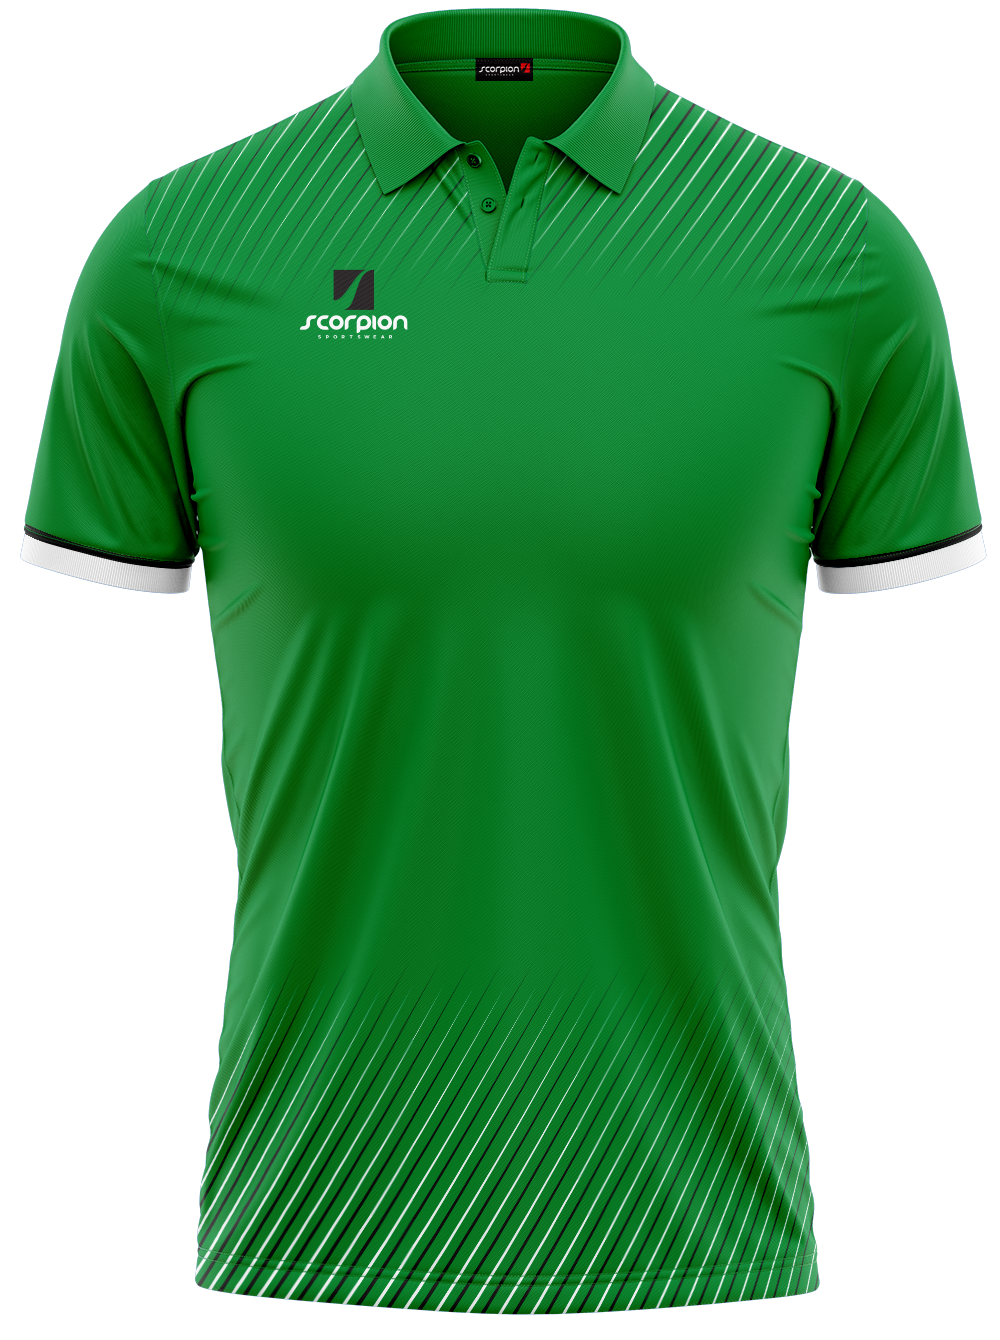 Scorpion Polo Shirts Pattern 3 - Green/Black/White